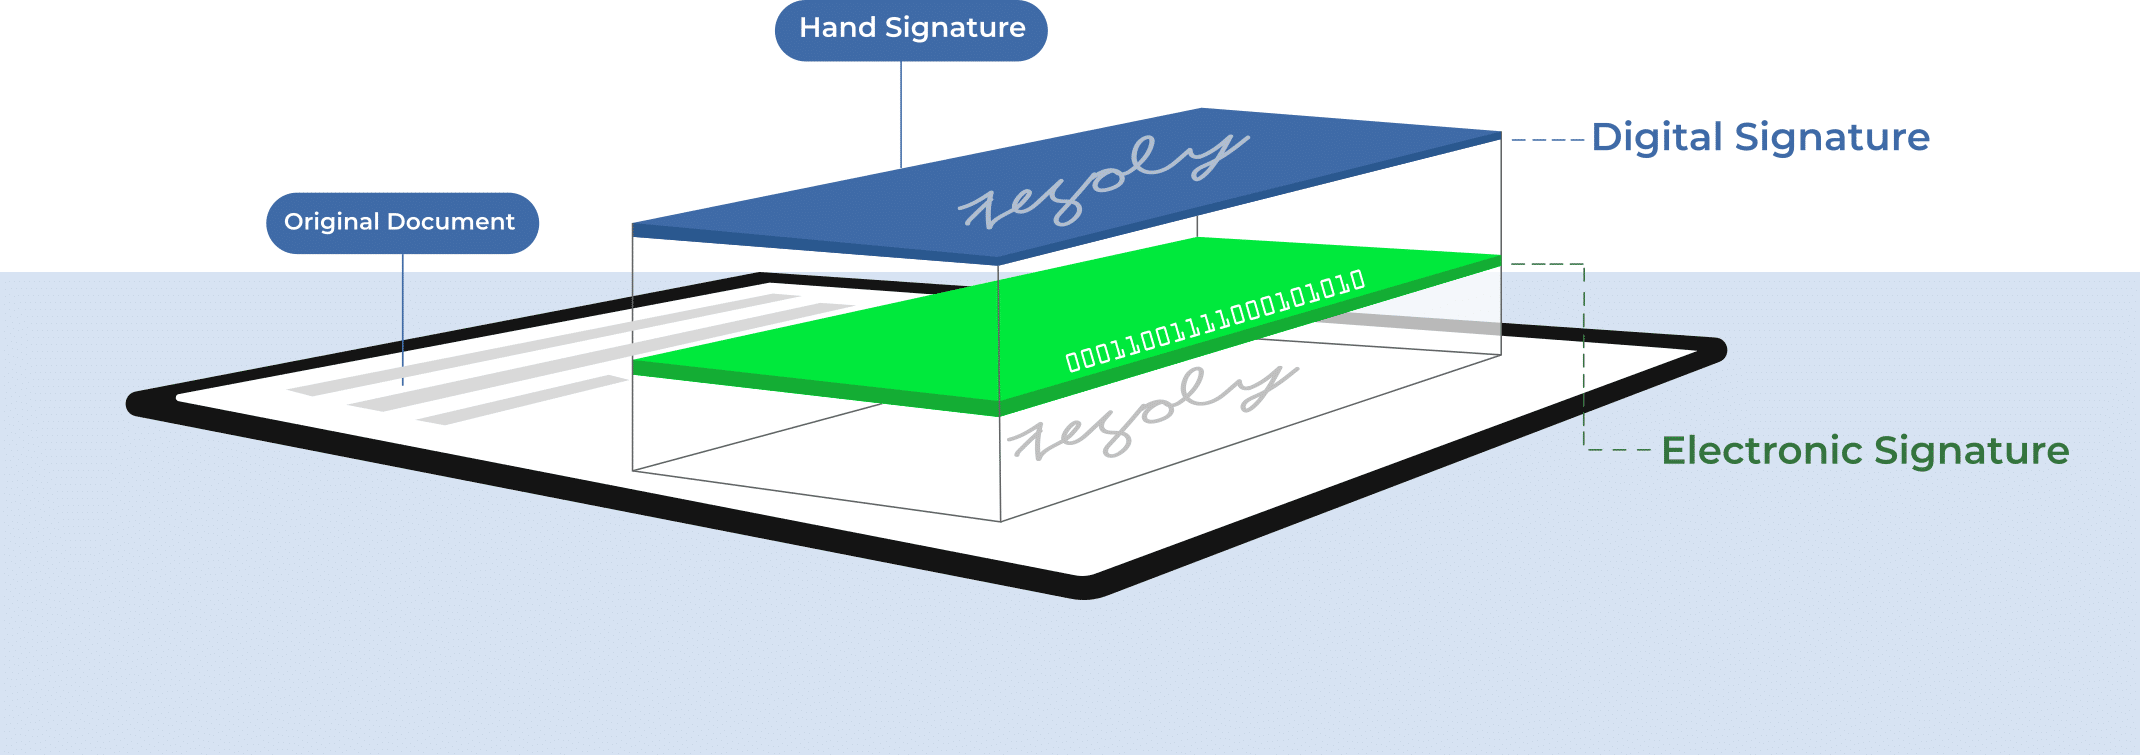 Was ist die digitale Unterschrift